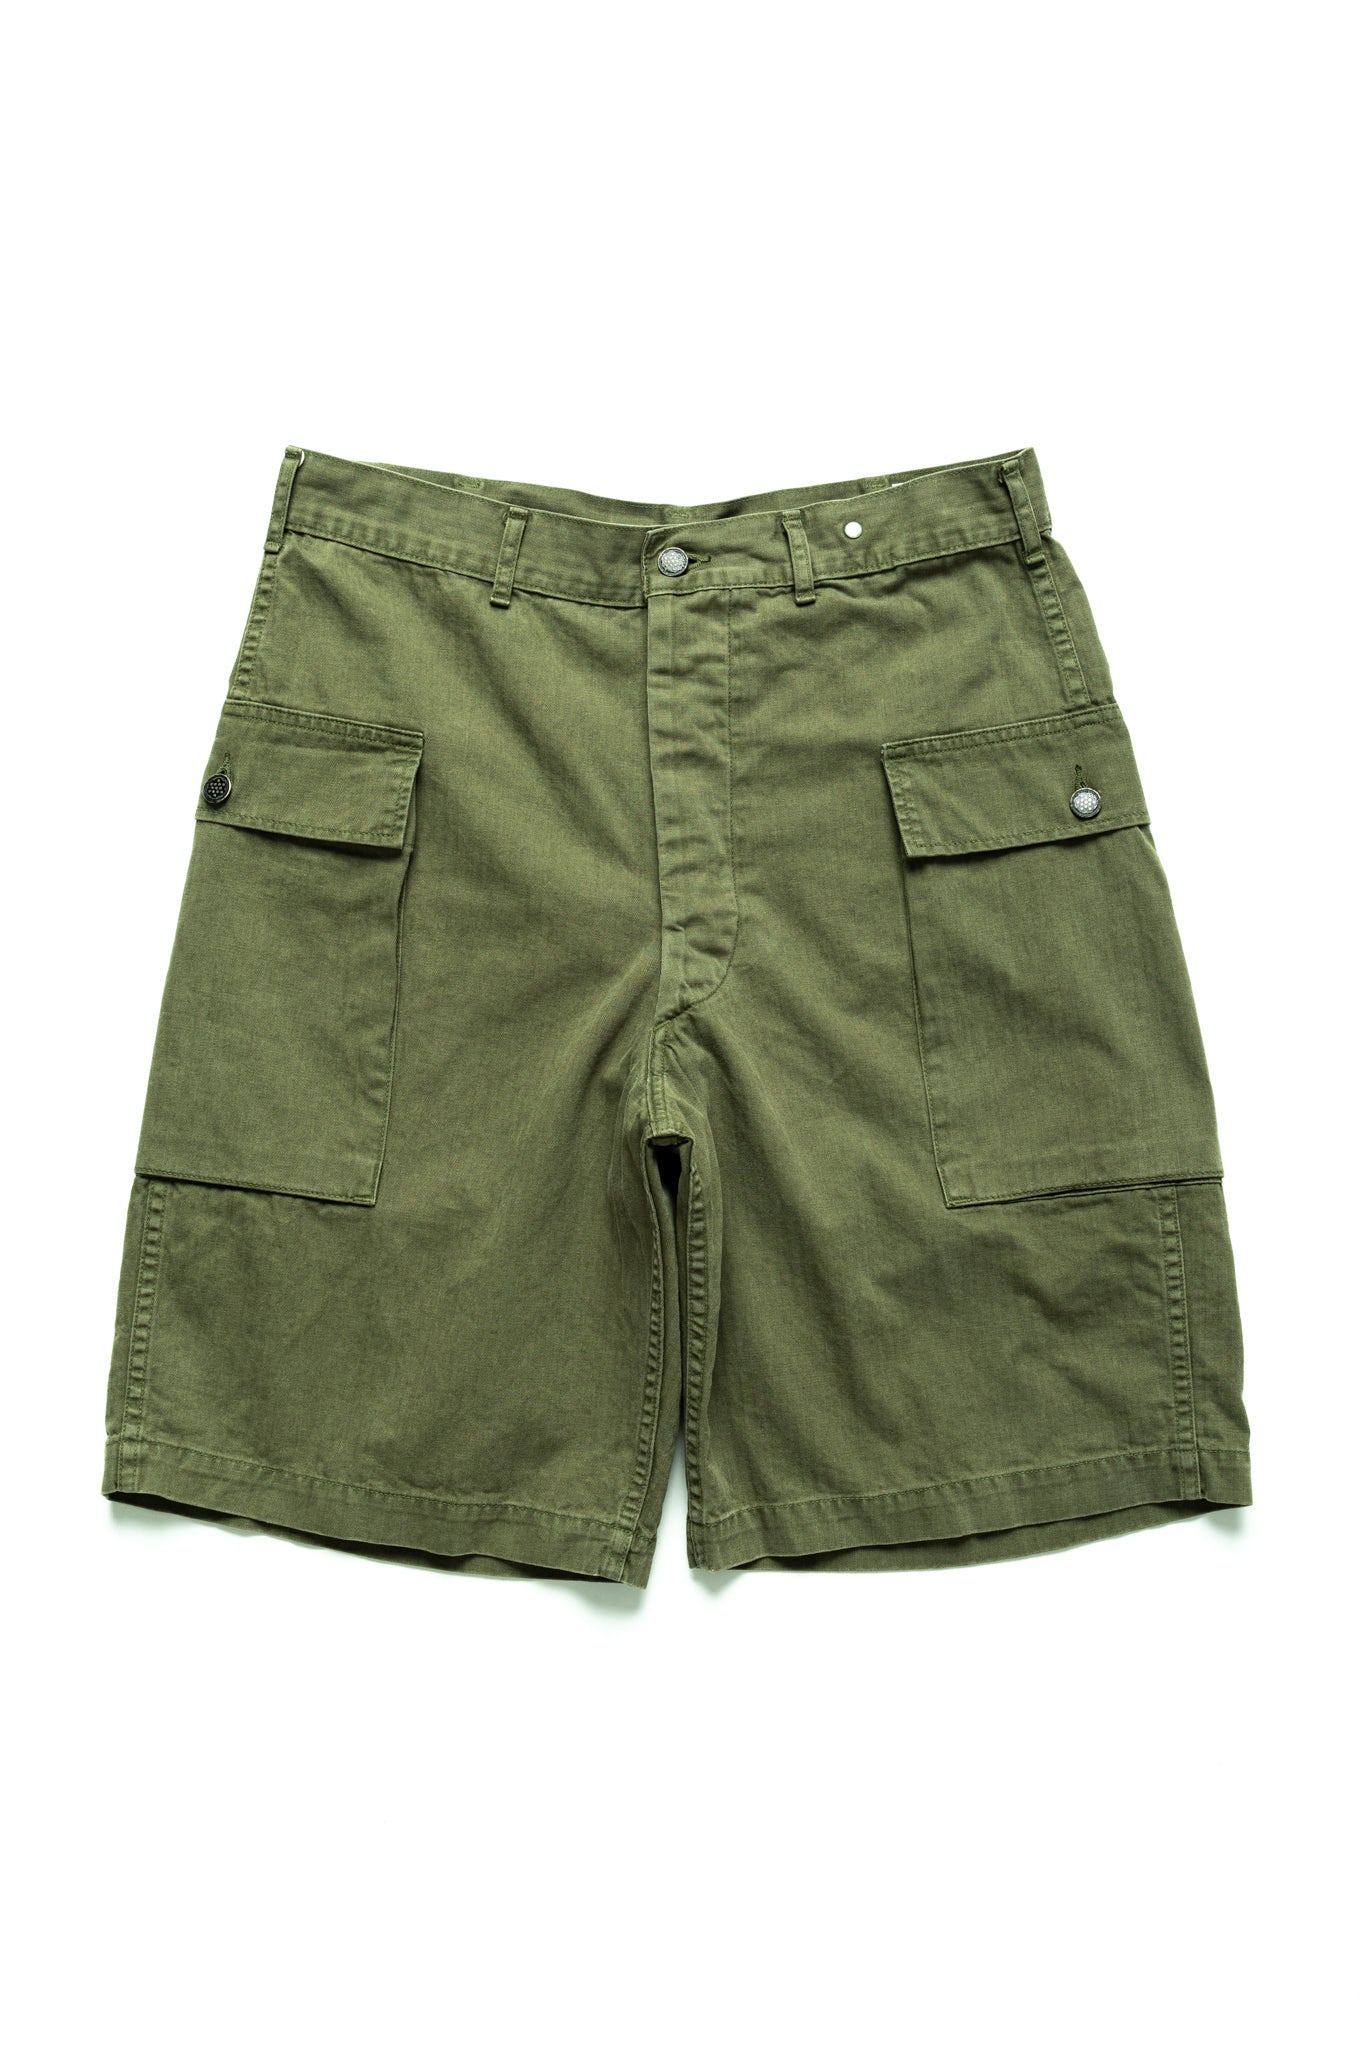 U.S. Army 2 Pocket Cargo Shorts - Army Green